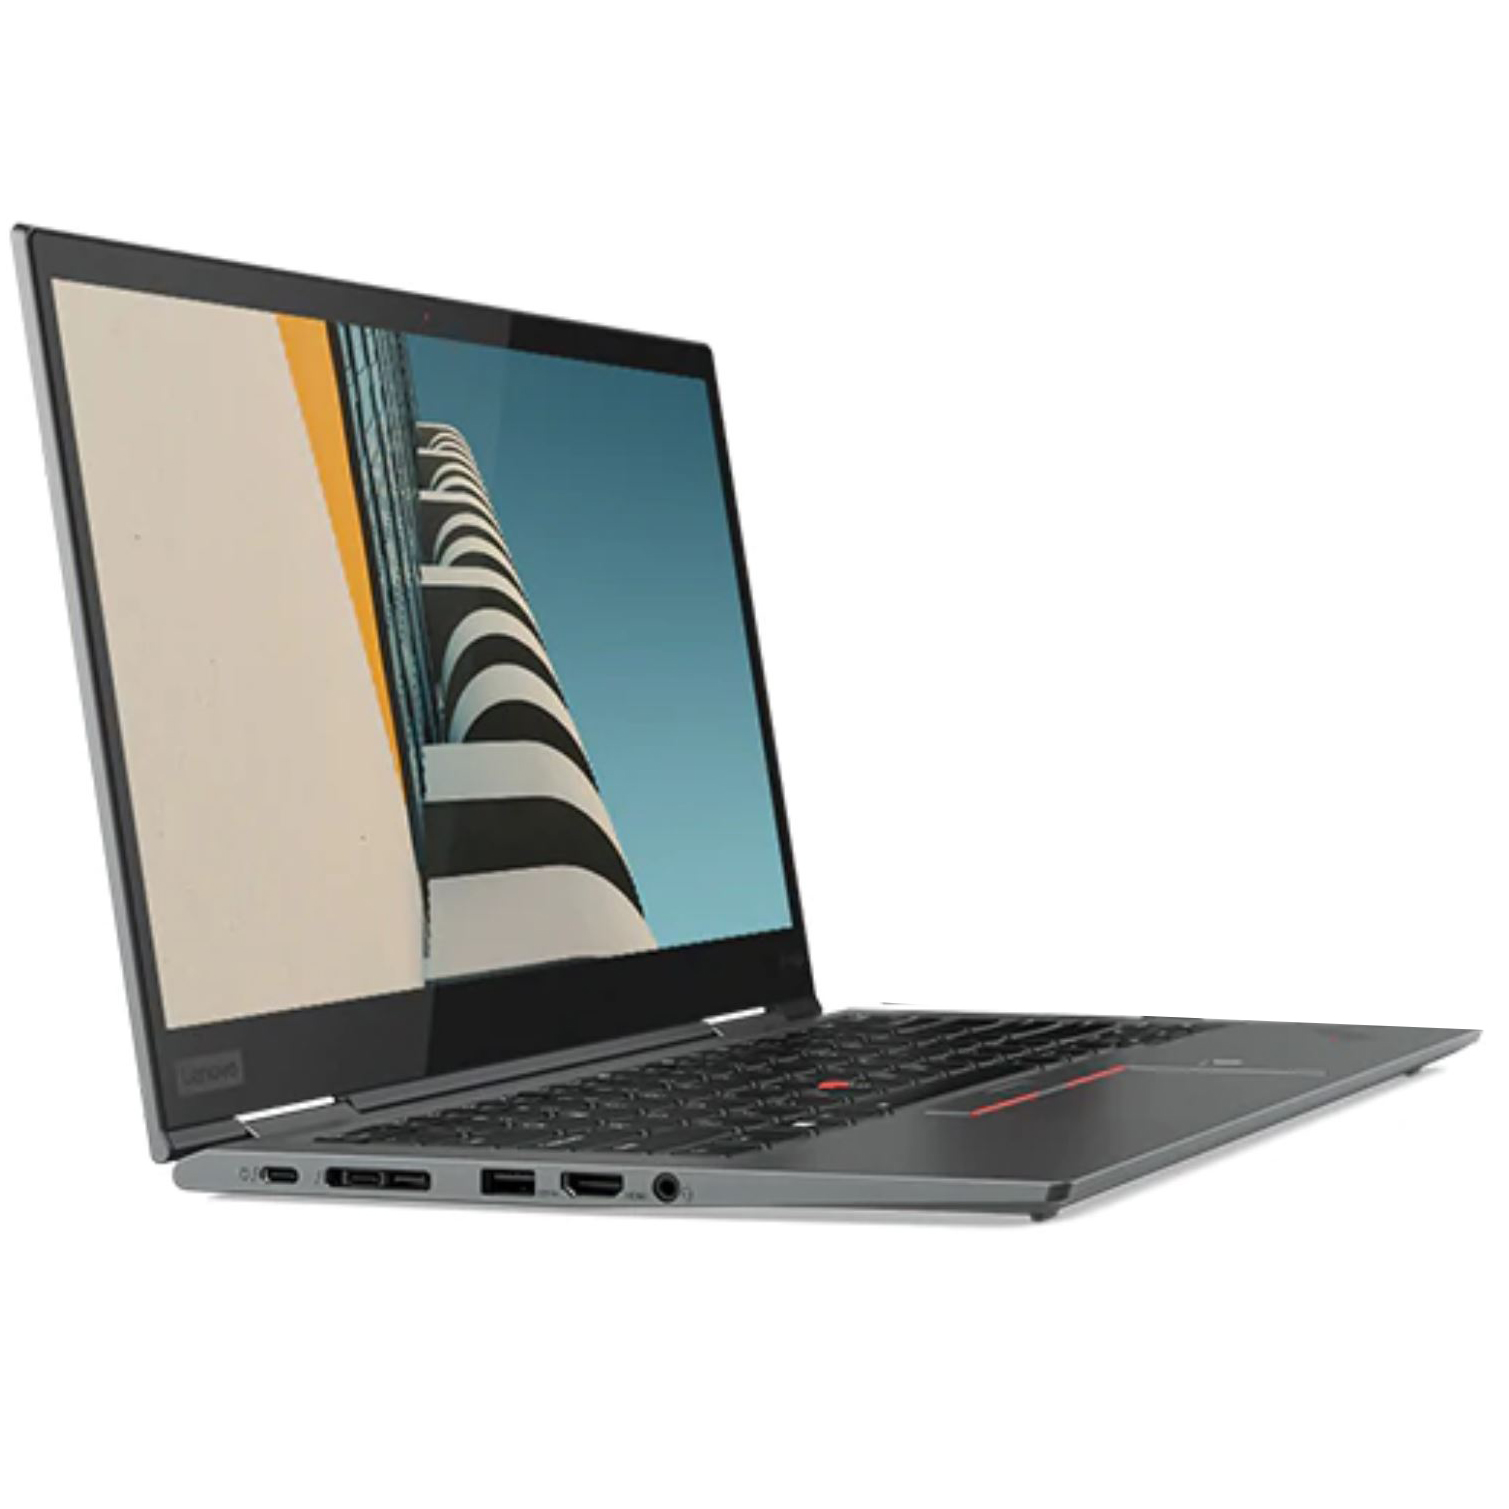 Lenovo X1 Yoga 14in FHD Touch i7 8565U 512GB SSD 16GB RAM W10P Laptop (20QFS03G00)